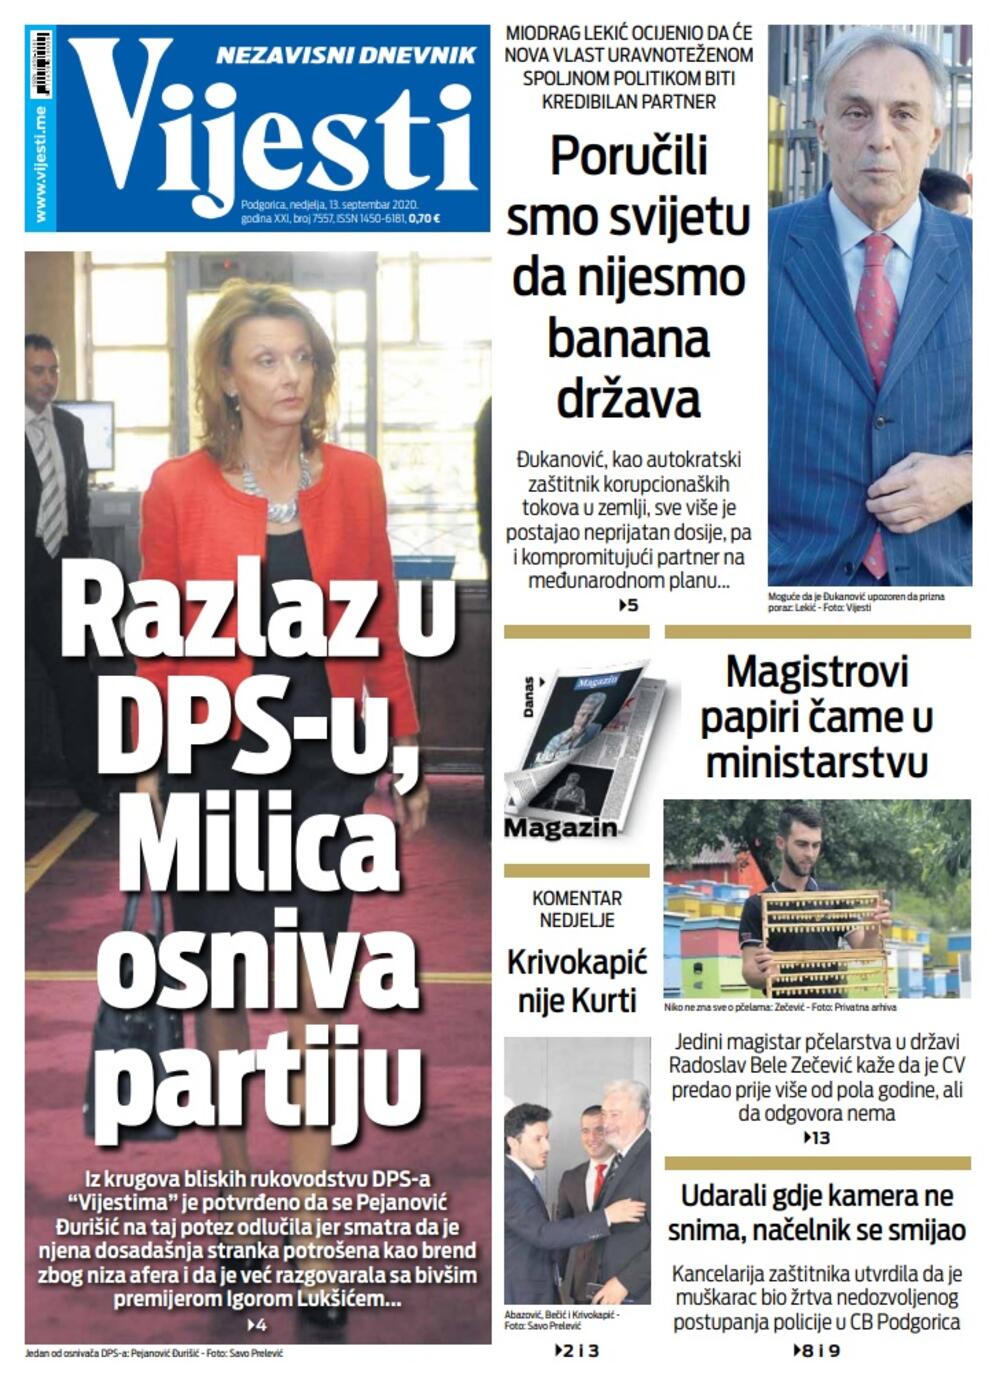 Naslovna strana "Vijesti" za 13. septembar 2020., Foto: Vijesti